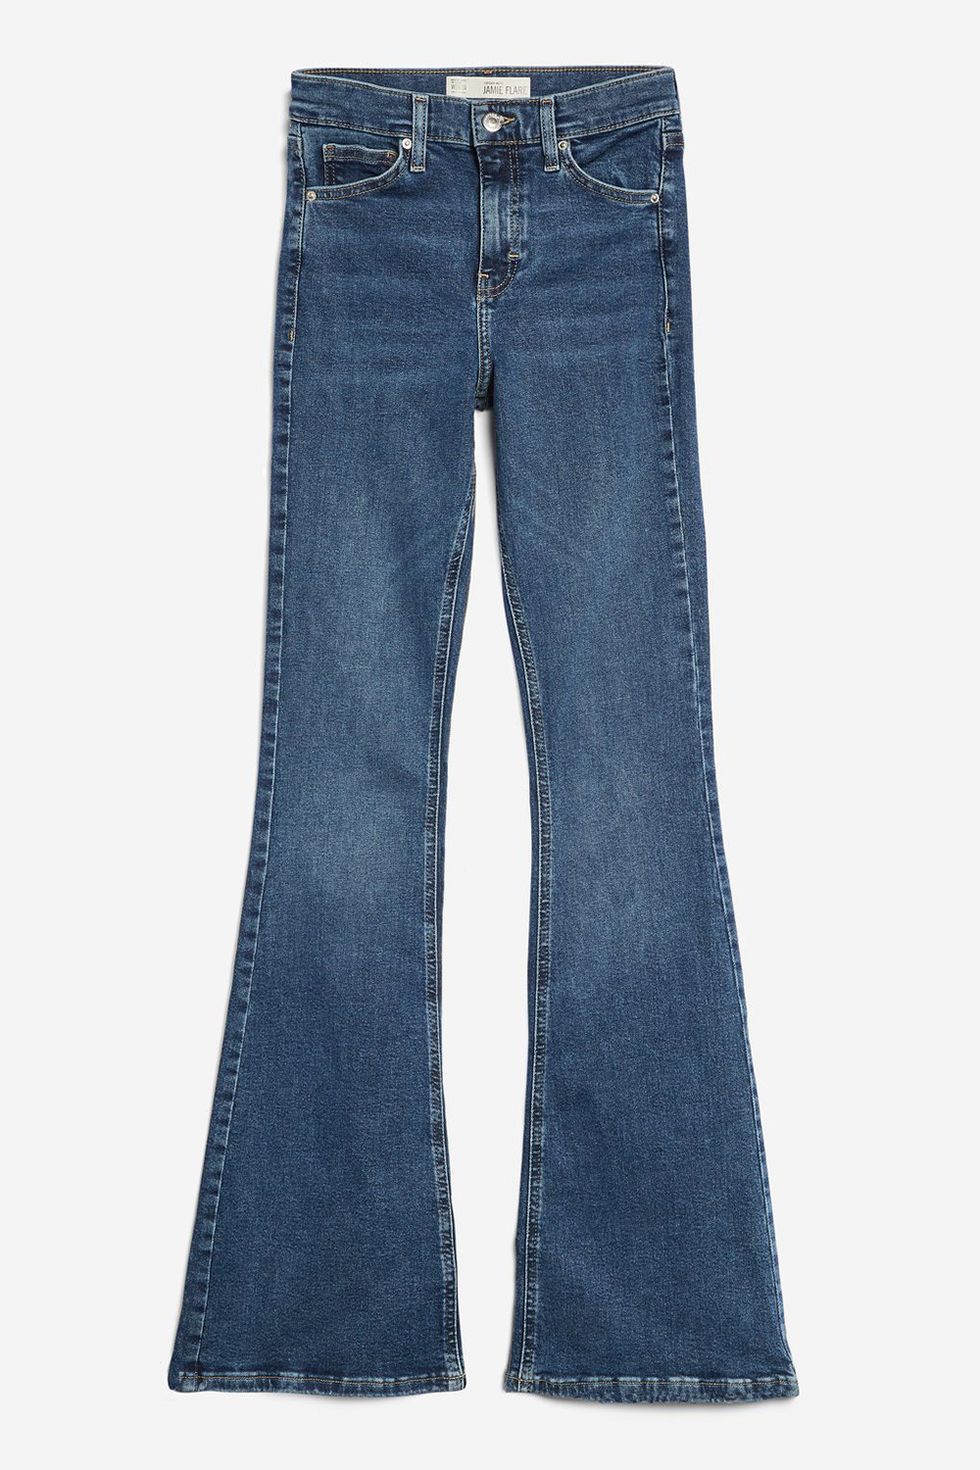 Denim, Jeans, Clothing, Blue, Pocket, Textile, Trousers, Carpenter jeans, 